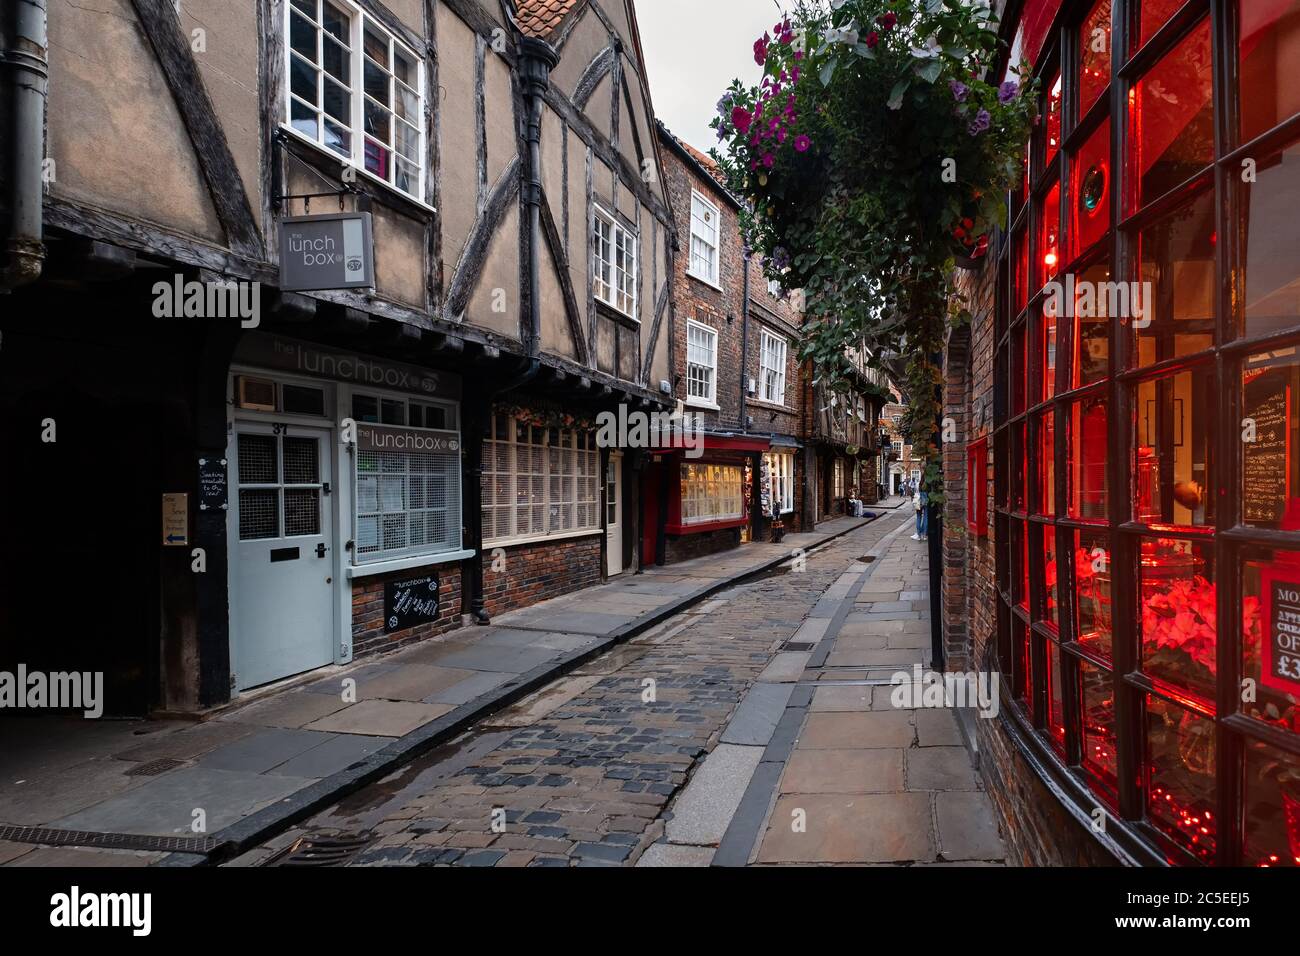 Die alte mittelalterliche Straße, bekannt als die Shambles, eine der wichtigsten touristischen Attraktionen in der englischen Stadt York Stockfoto